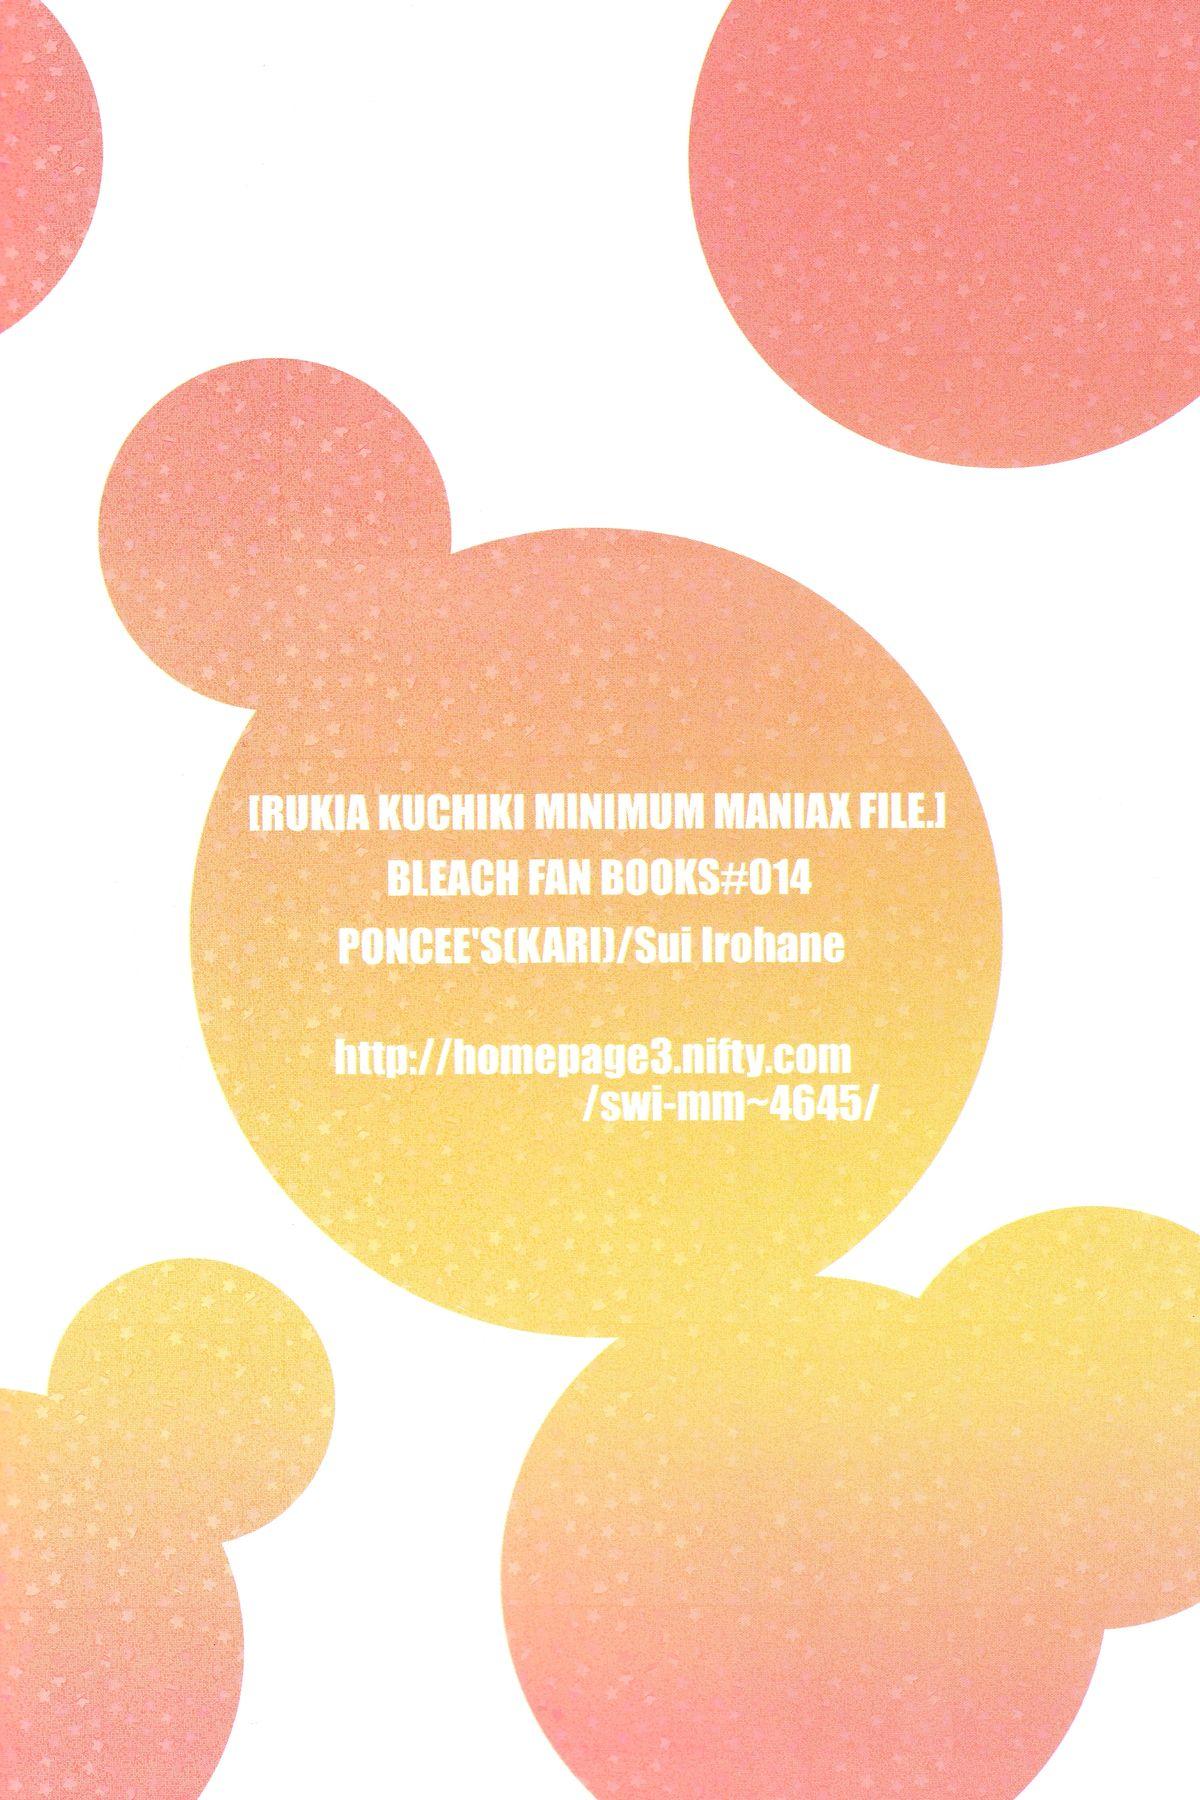 Assfingering Rukia Kuchiki Minimum Maniax File - Bleach Stunning - Page 55